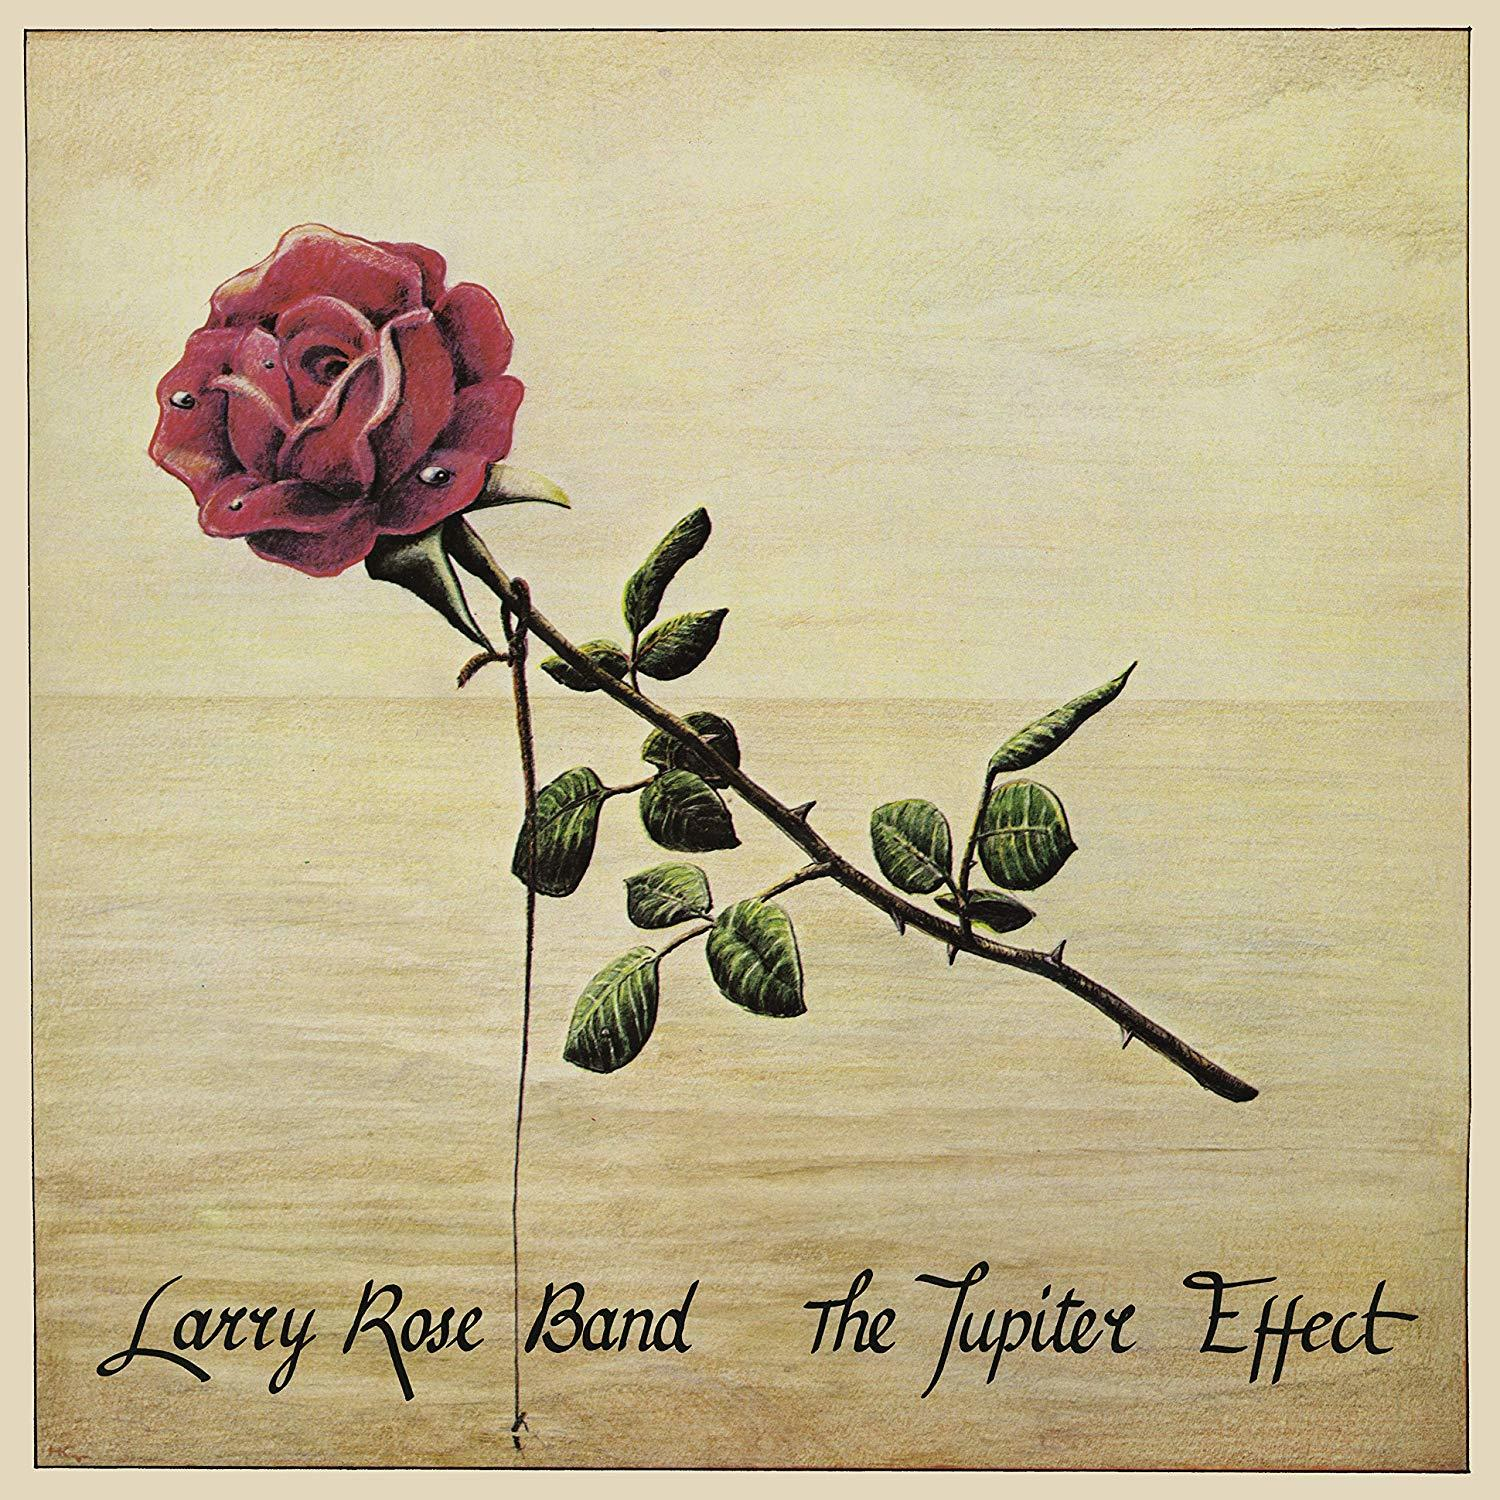 Larry Band Rose - (Vinyl) JUPITER - EFFECT